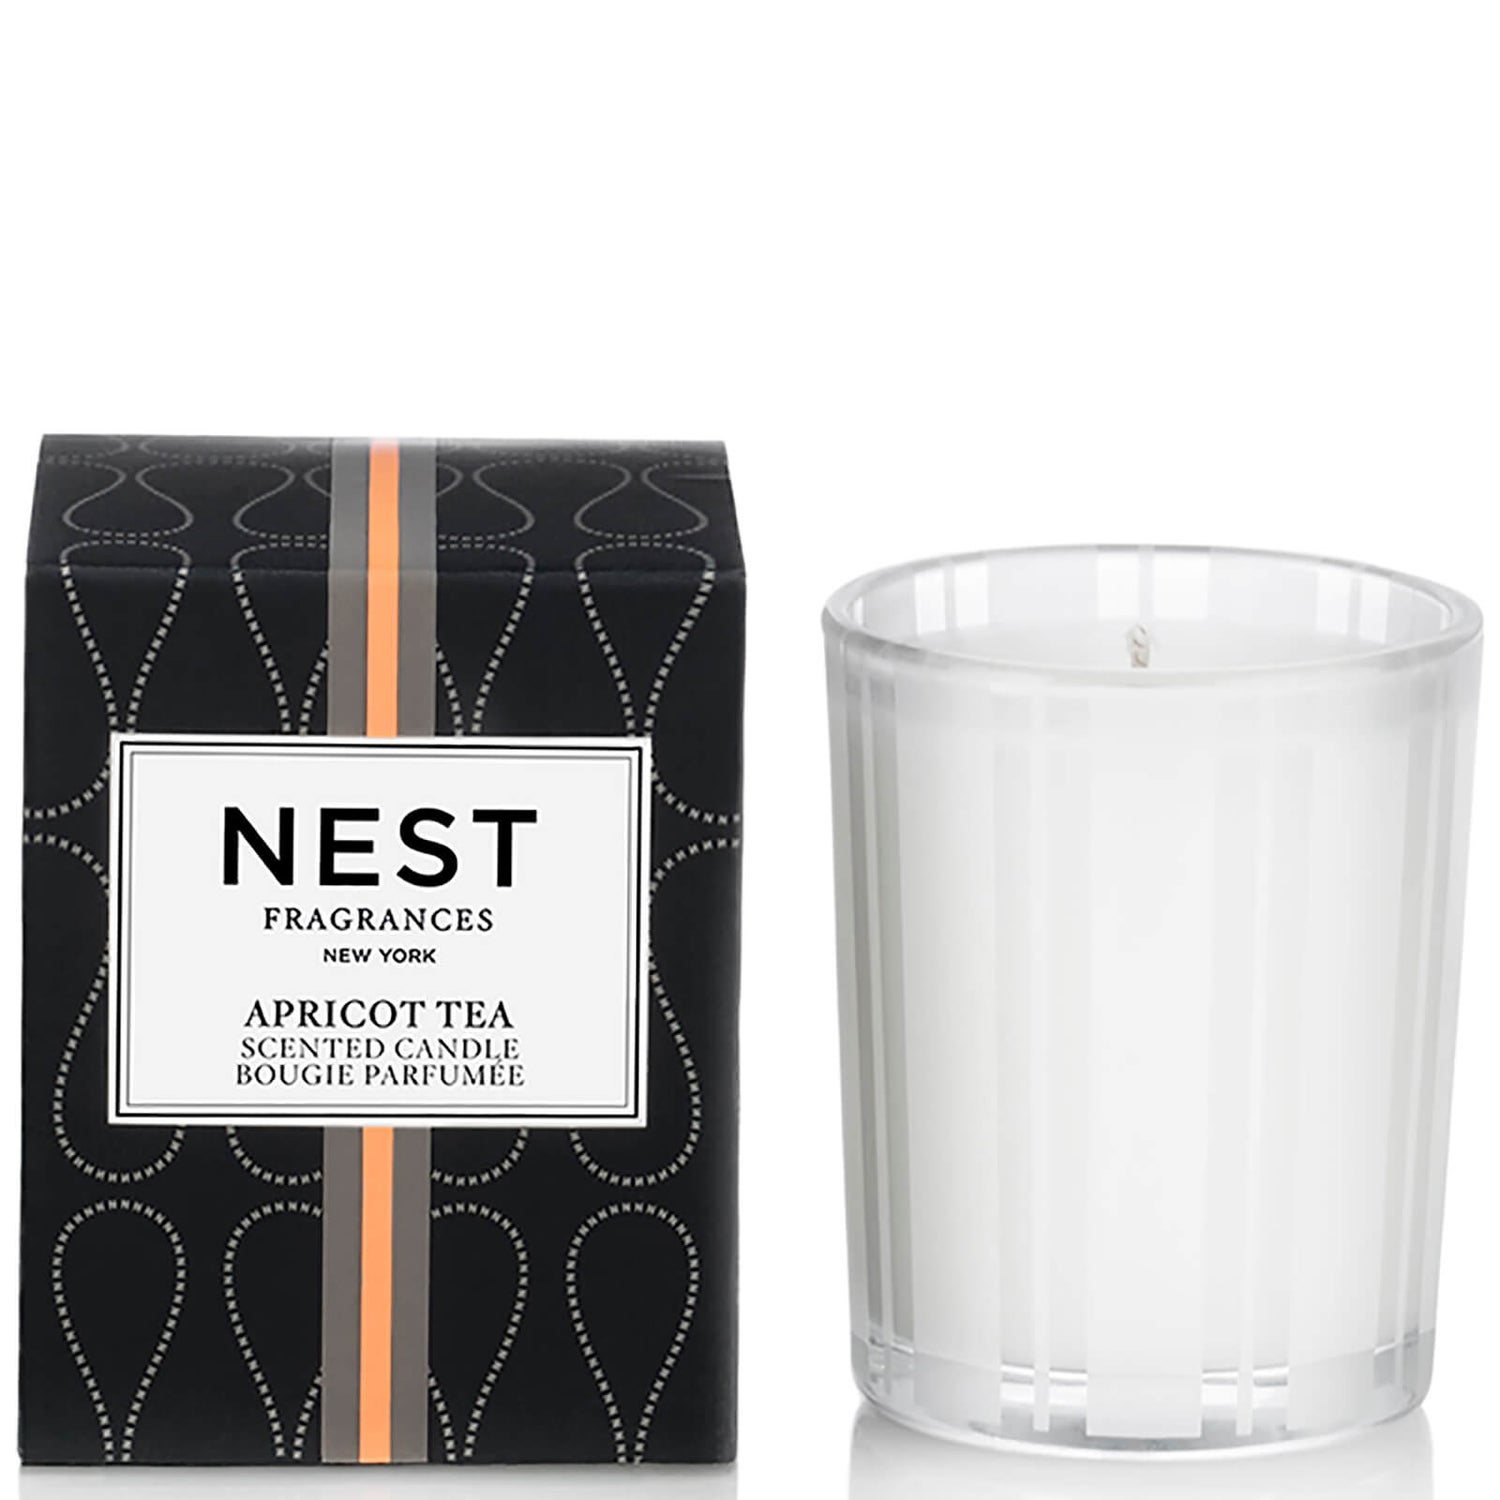 NEST Fragrances Apricot Tea Votive Candle